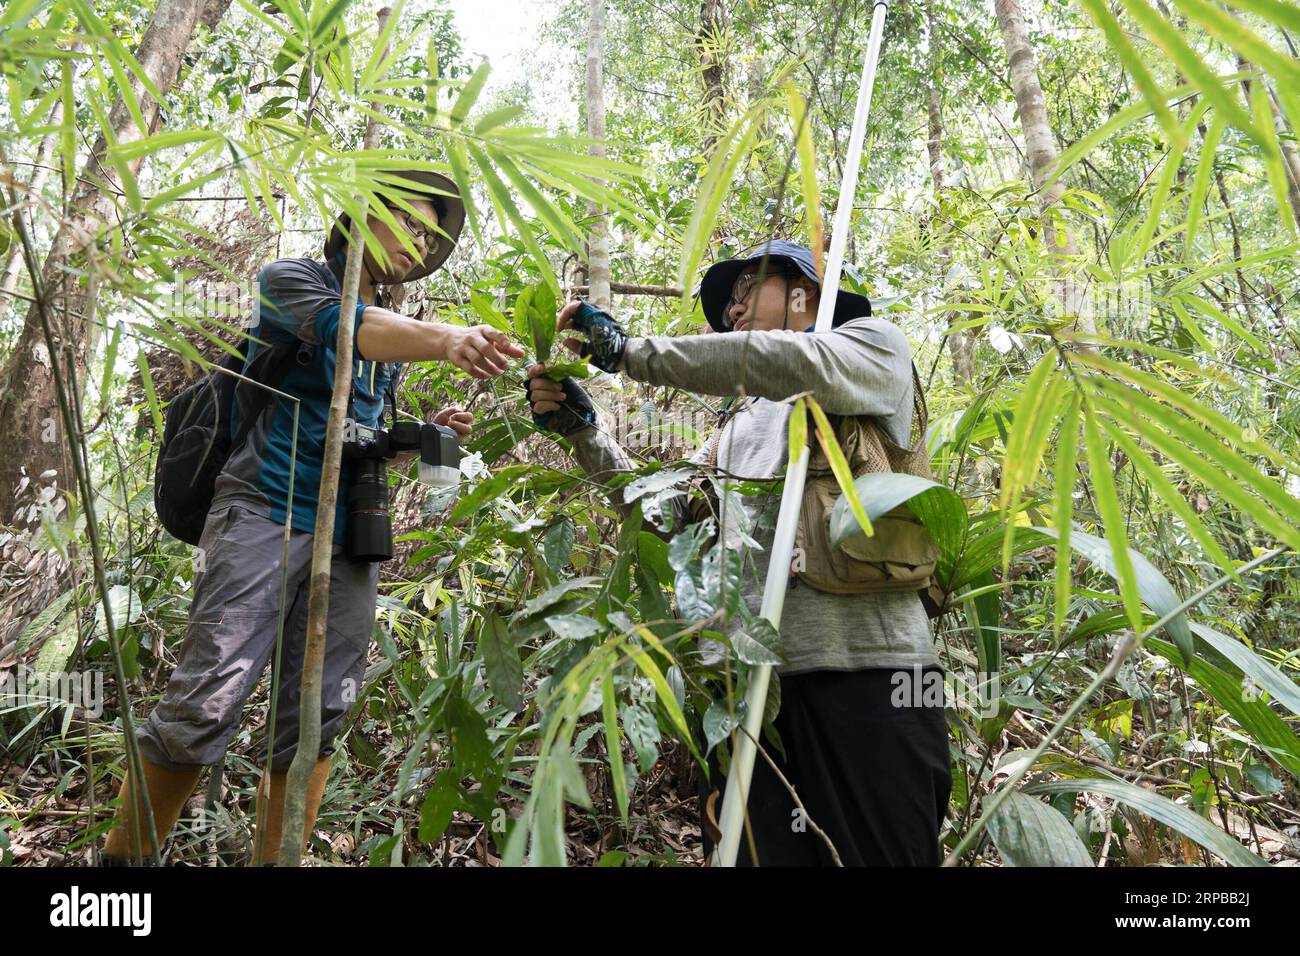 (190603) -- TAMANTHI, 3 juin 2019 (Xinhua) -- des chercheurs chinois recueillent des échantillons de plantes dans le sanctuaire de faune de Tamanthi, dans le nord du Myanmar, le 26 mai 2019. Une expédition conjointe Chine-Myanmar, composée de chercheurs de l’Institut de recherche sur la biodiversité de l’Asie du Sud-est, de l’Académie chinoise des sciences (cas-SEABRI) et de la conservation des ressources naturelles et de l’environnement du Myanmar, mène des recherches sur la biodiversité du sanctuaire de faune sauvage de Tamanthi dans le nord du Myanmar. L’expédition, la huitième du genre depuis 2014, a débuté le 14 mai et durera jusqu’au 15 juin. (Xinhua/Jin Liwang) MYANMAR Banque D'Images